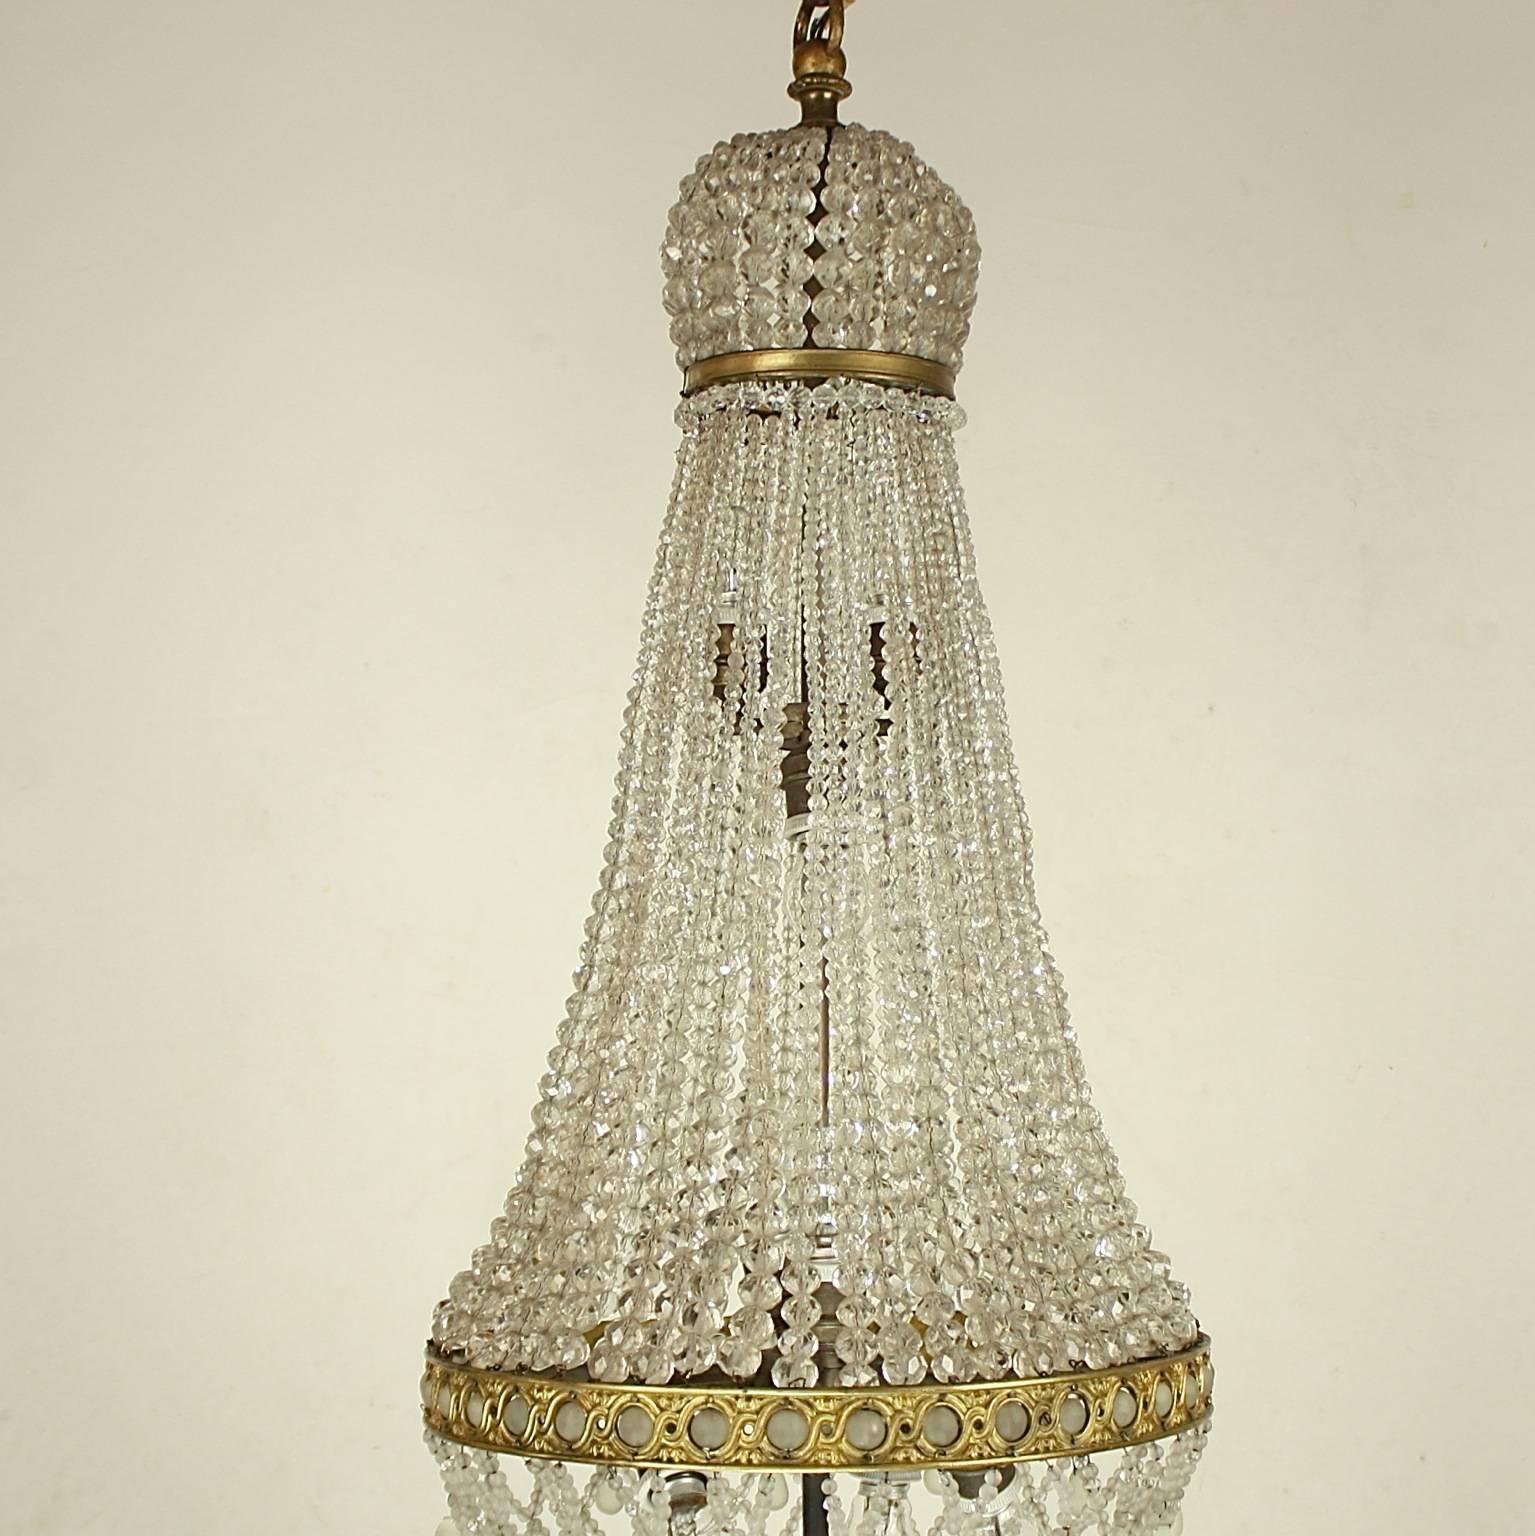 Ein feiner Zelt- und Taschenlüster aus vergoldeter Bronze mit einem Kranz in Form einer Krone aus kleinen facettierten Perlen über einem feinen Bronzeband, von dem Ketten aus abgestuften geschliffenen Kristallperlen zu einer kunstvollen Galerie aus